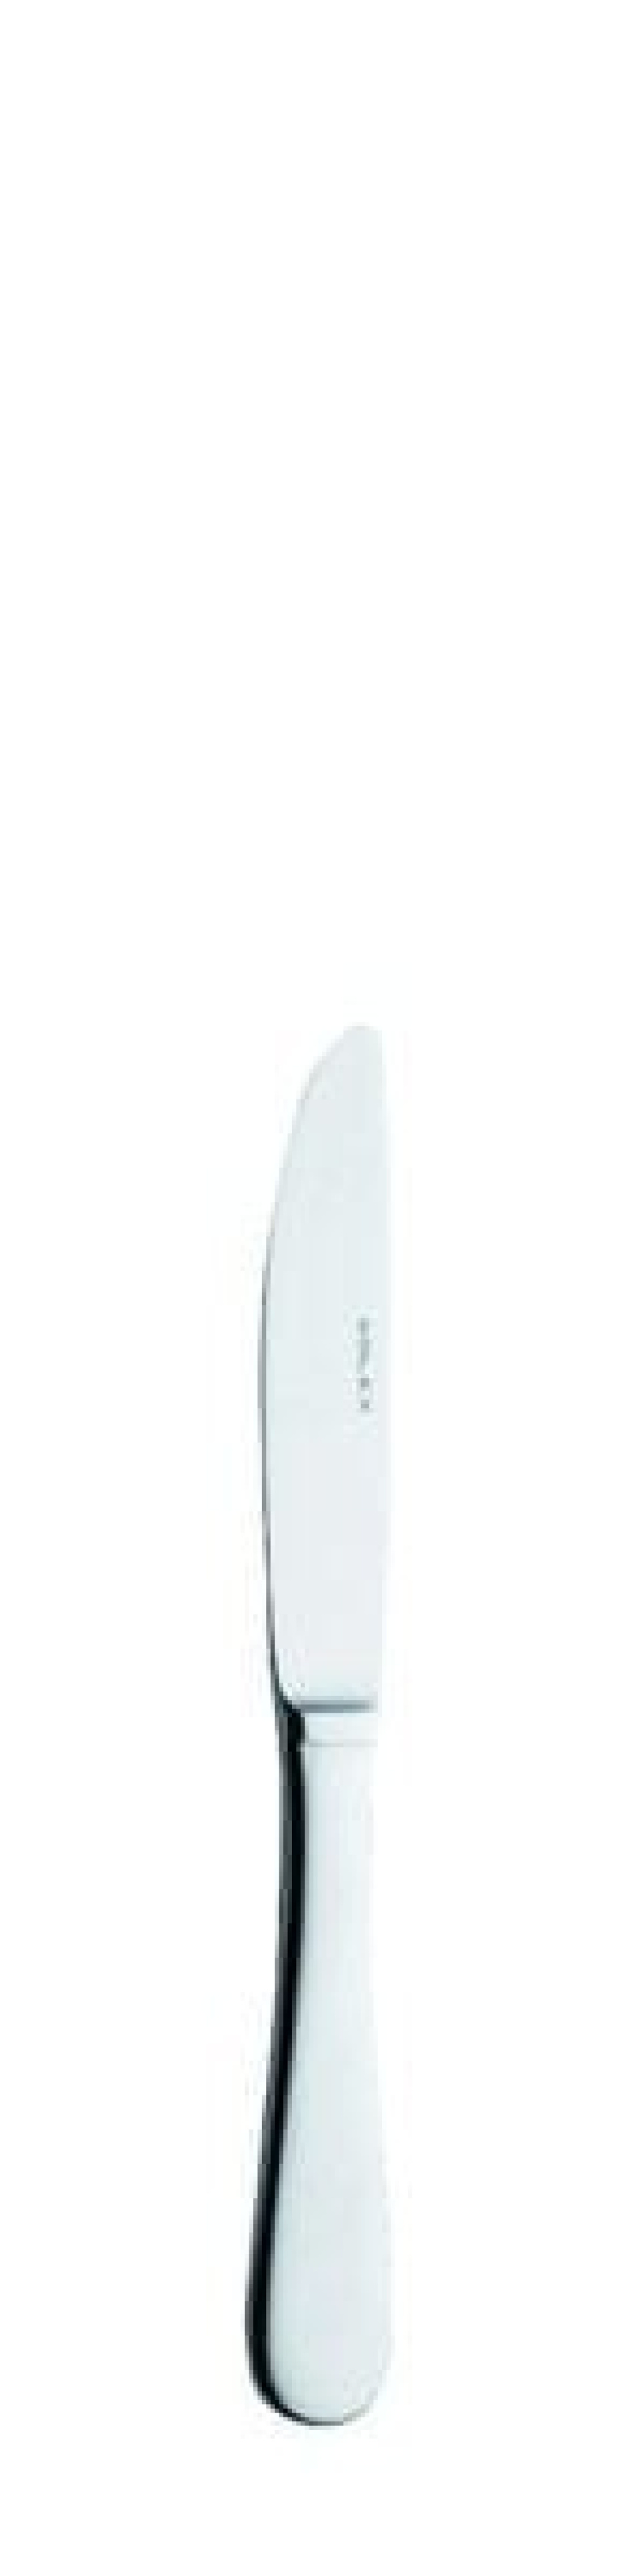 Nóż do masła Baguette 175 mm - Solex w grupie Nakrycie stołu / Sztućce / Noże do masła w The Kitchen Lab (1284-14150)